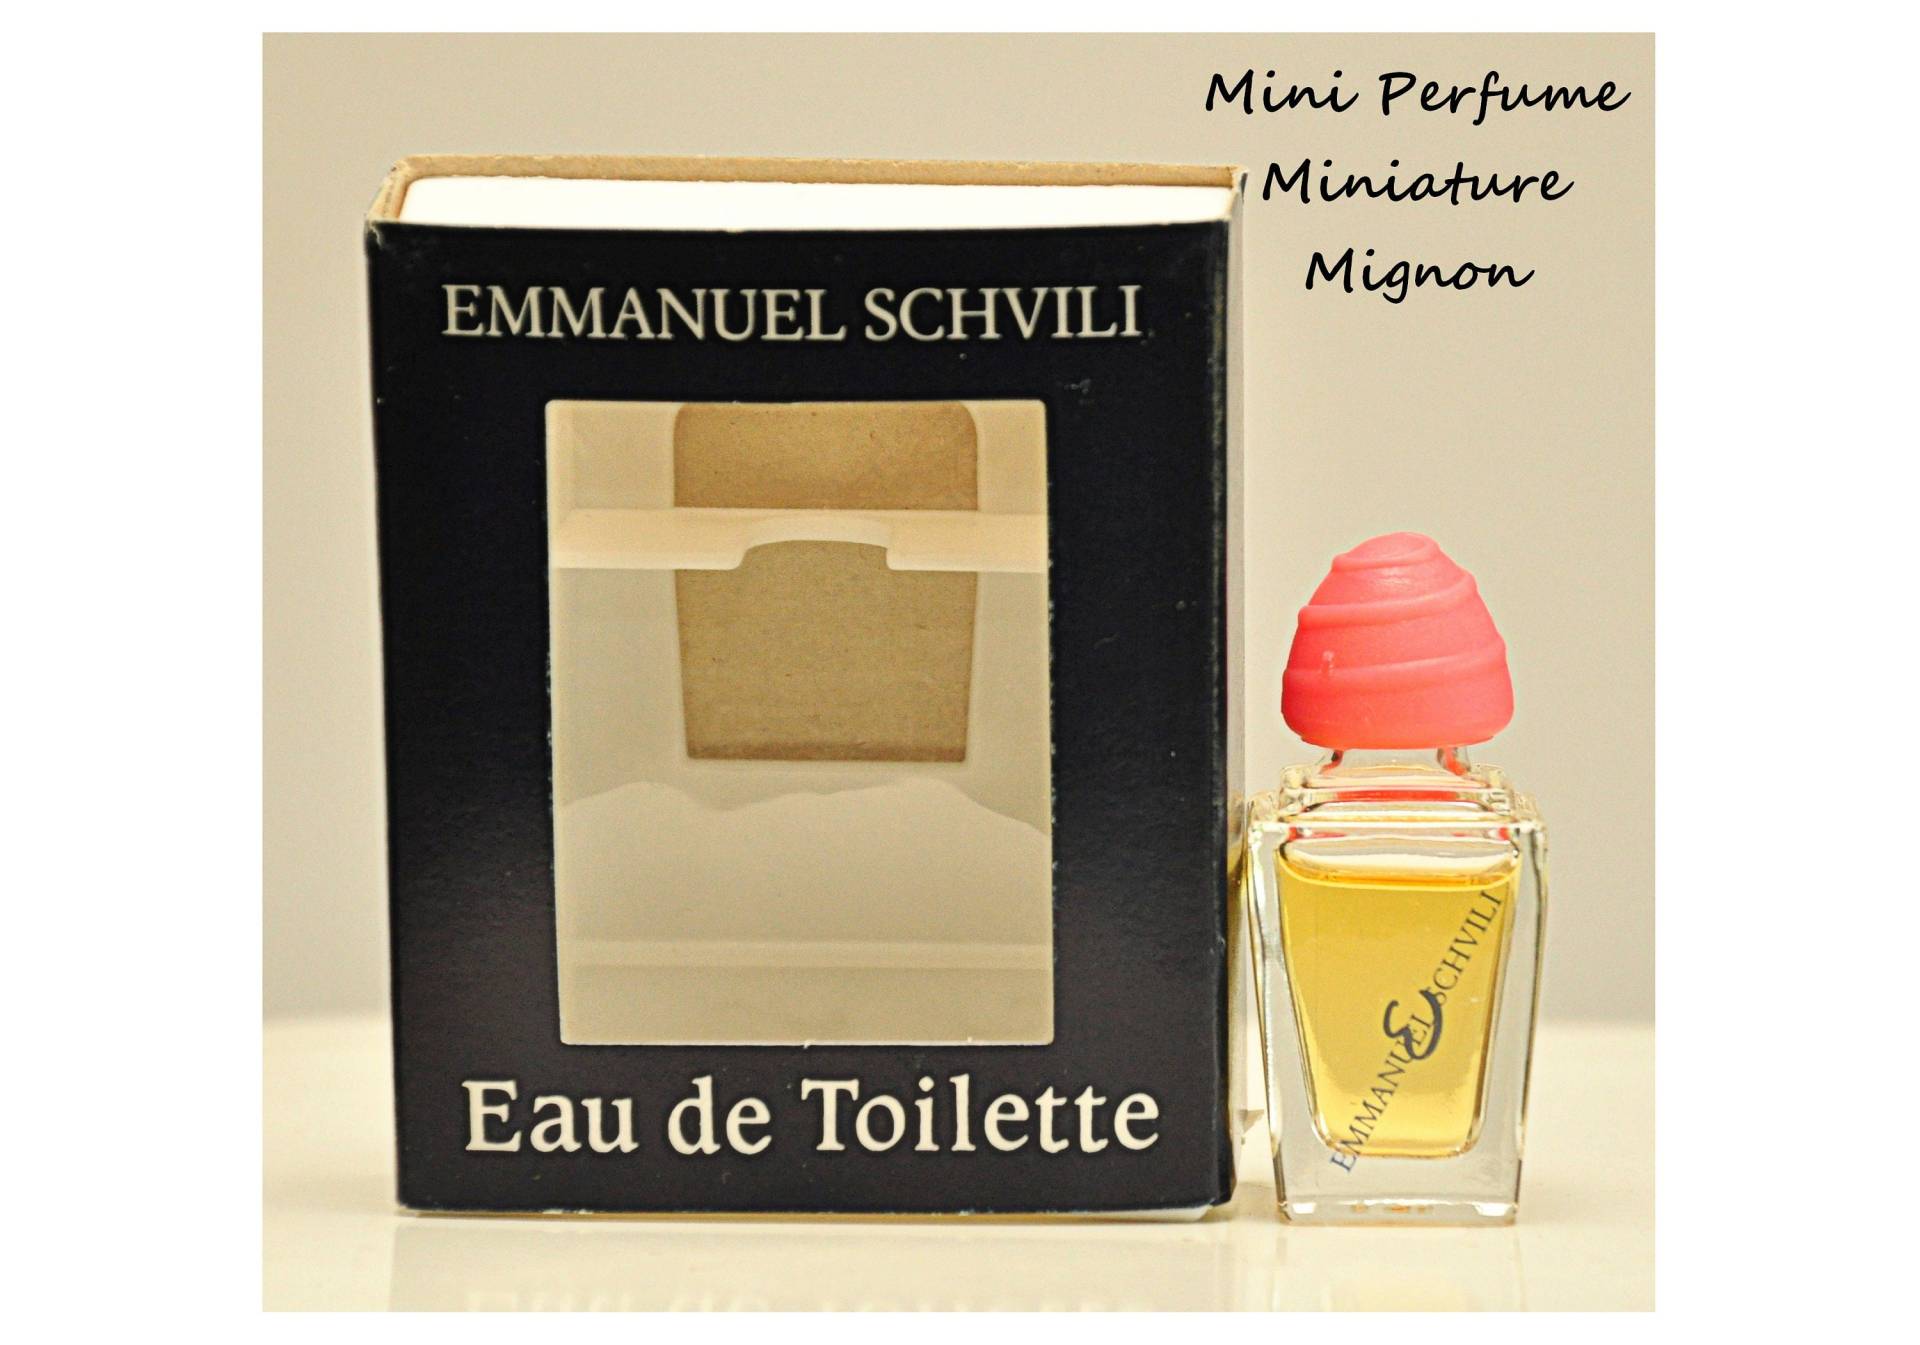 Emmanuel Schvili Von Eau De Toilette Edt 7, 5 Ml Miniatura Splash Non Spray Damenparfüm Seltene Vintage 80Er Jahre von Etsy - YourVintagePerfume